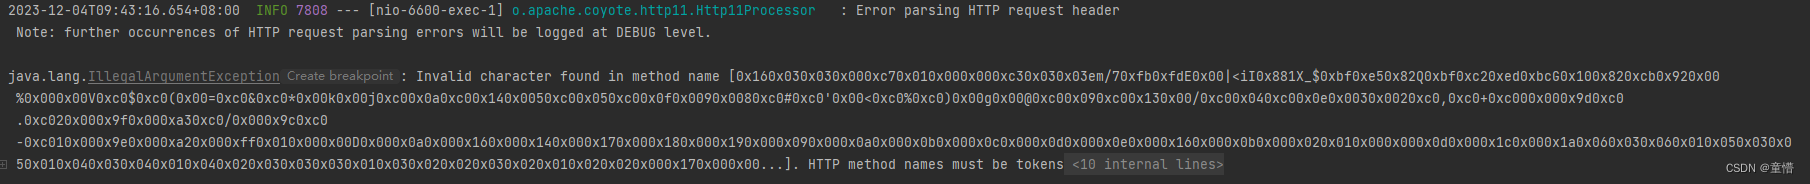 问题：HTTP method names must be tokens